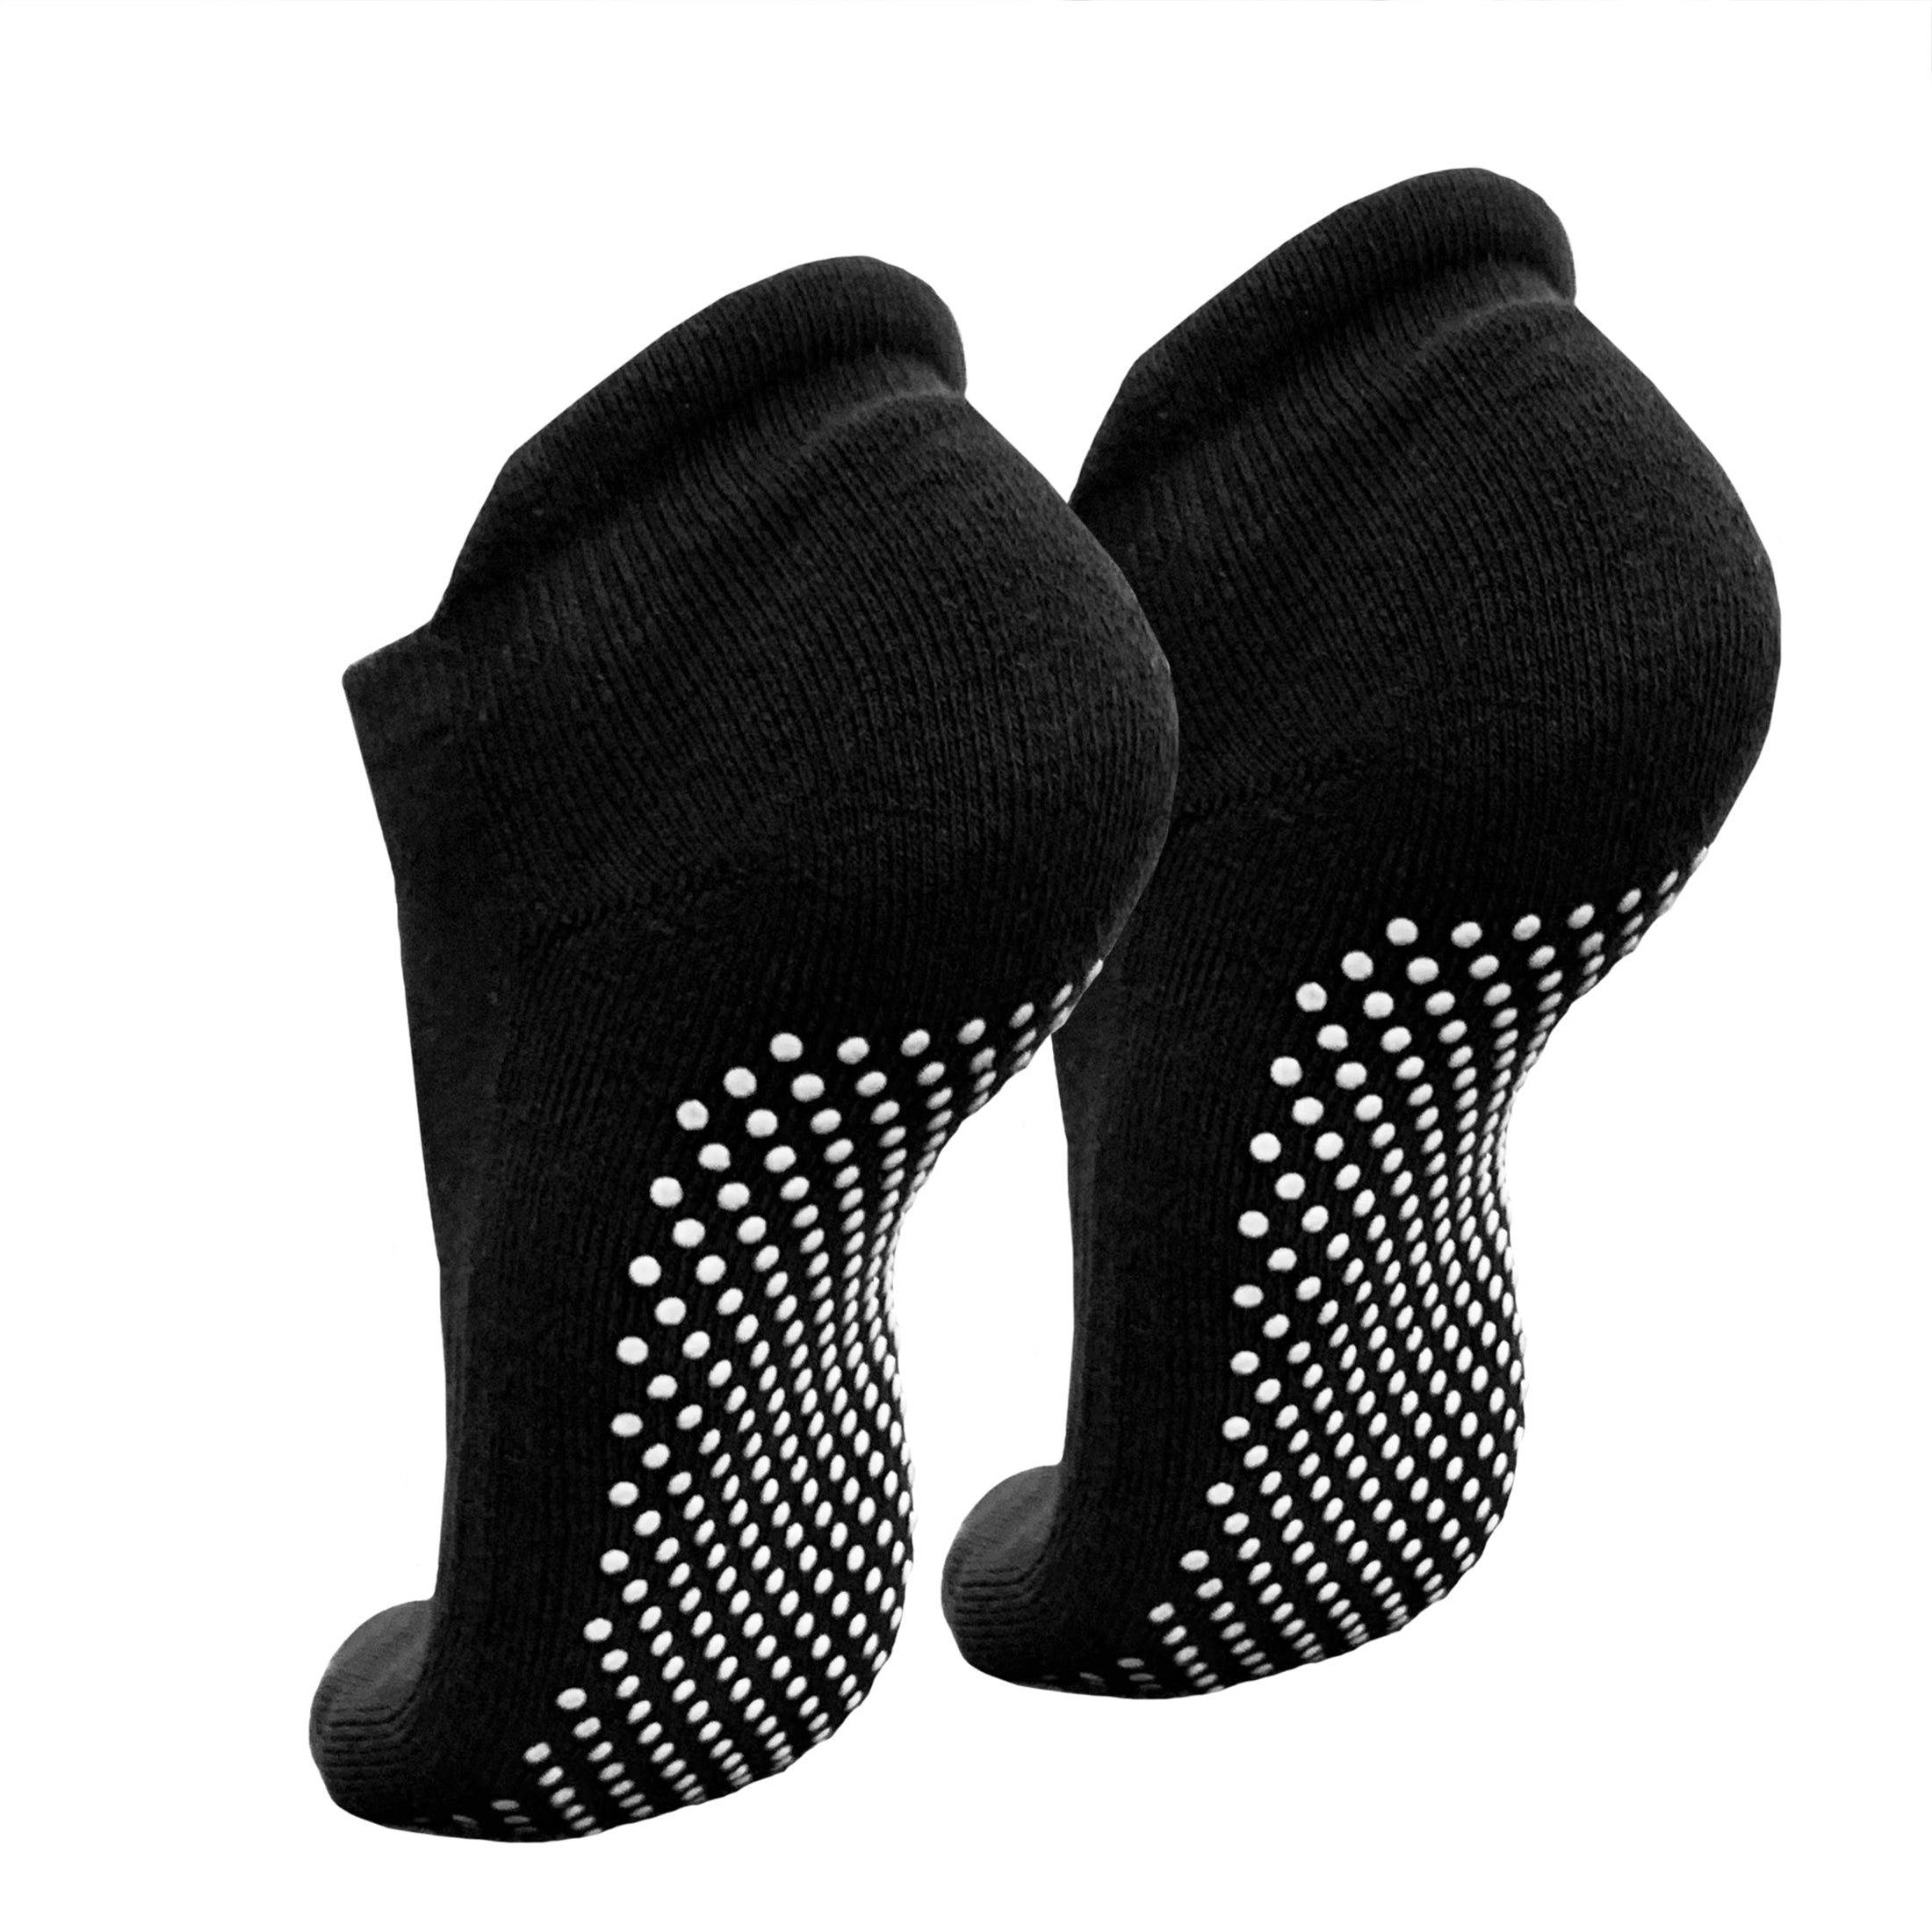 Men's Soccer Socks Anti Slip Non Slip Grip Pads for Football Basketball  Sports Grip Socks, 4 Pair (White)